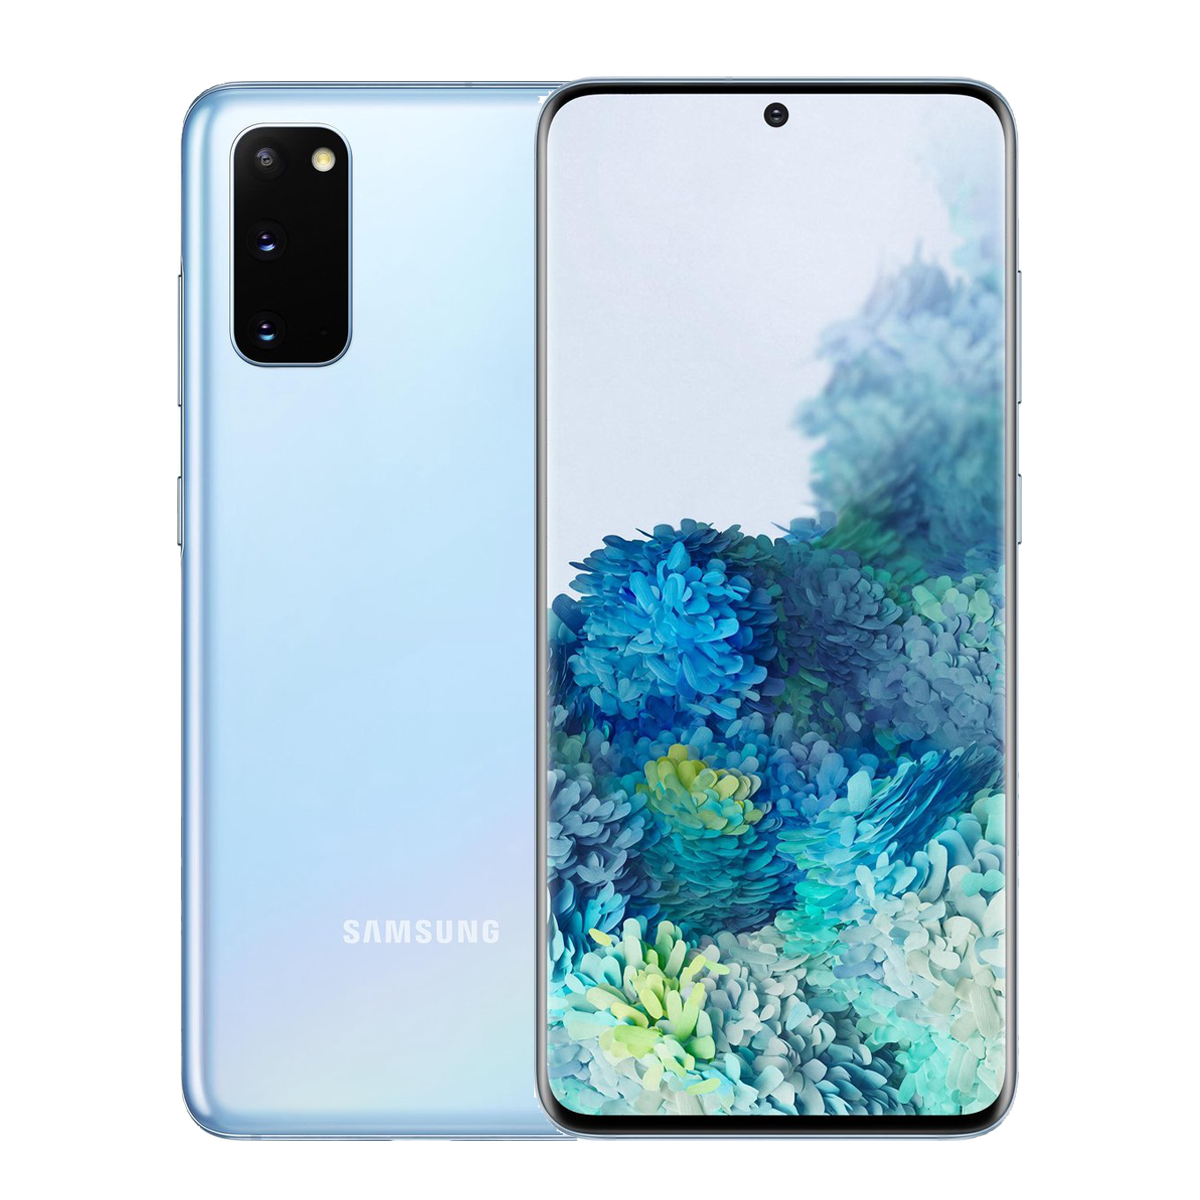 Refurbished Samsung Galaxy S20 5G 128GB Blau A-grade